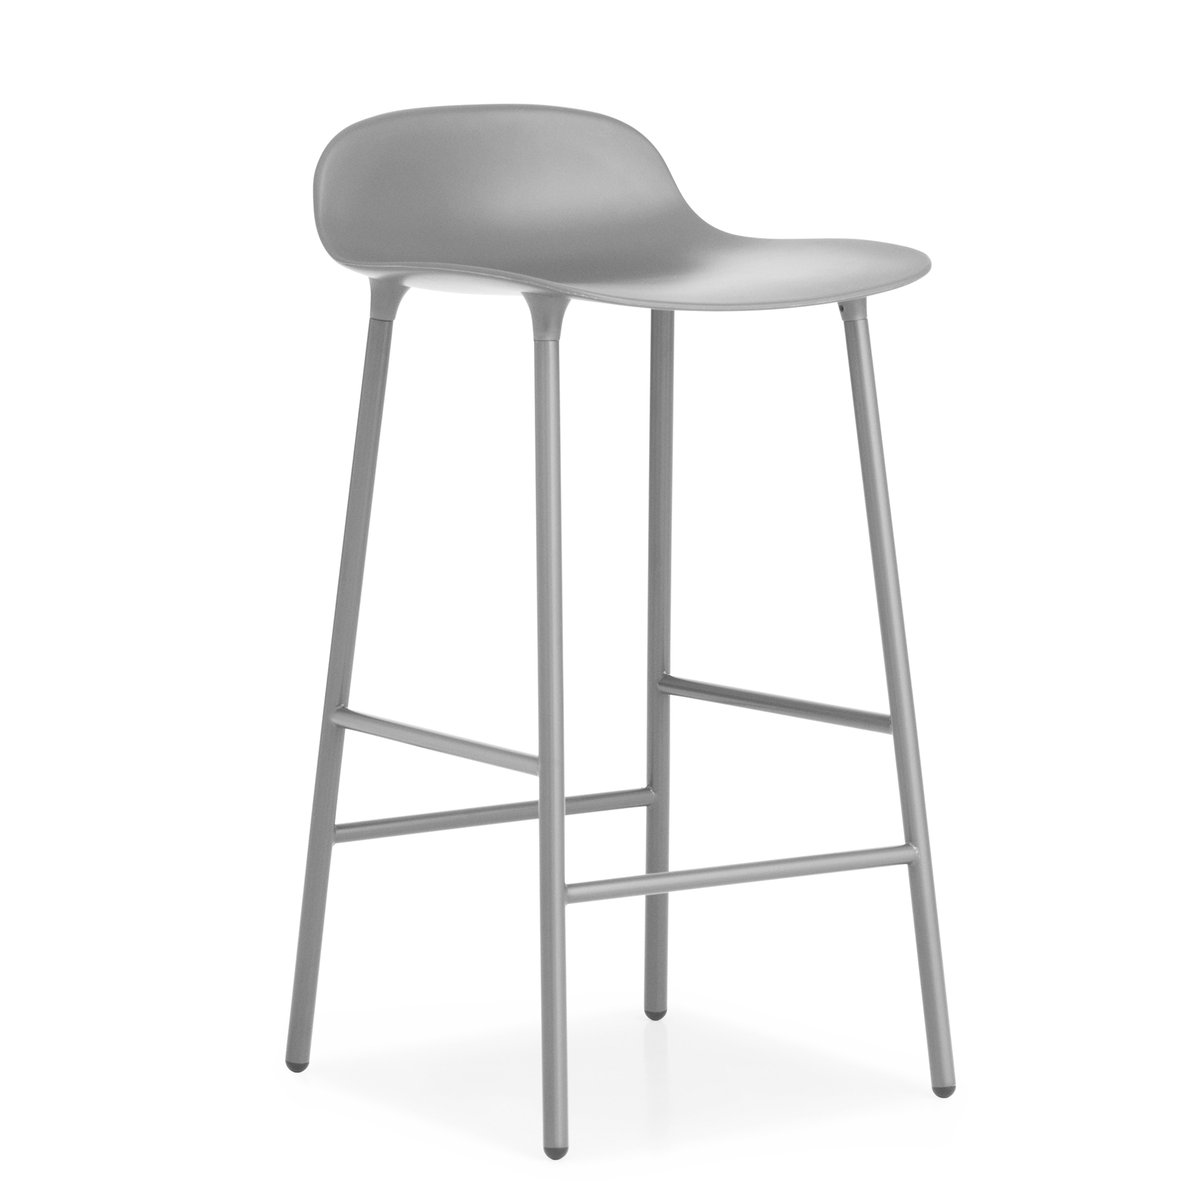 Normann Copenhagen Form Chair barkruk metalen poten grijs